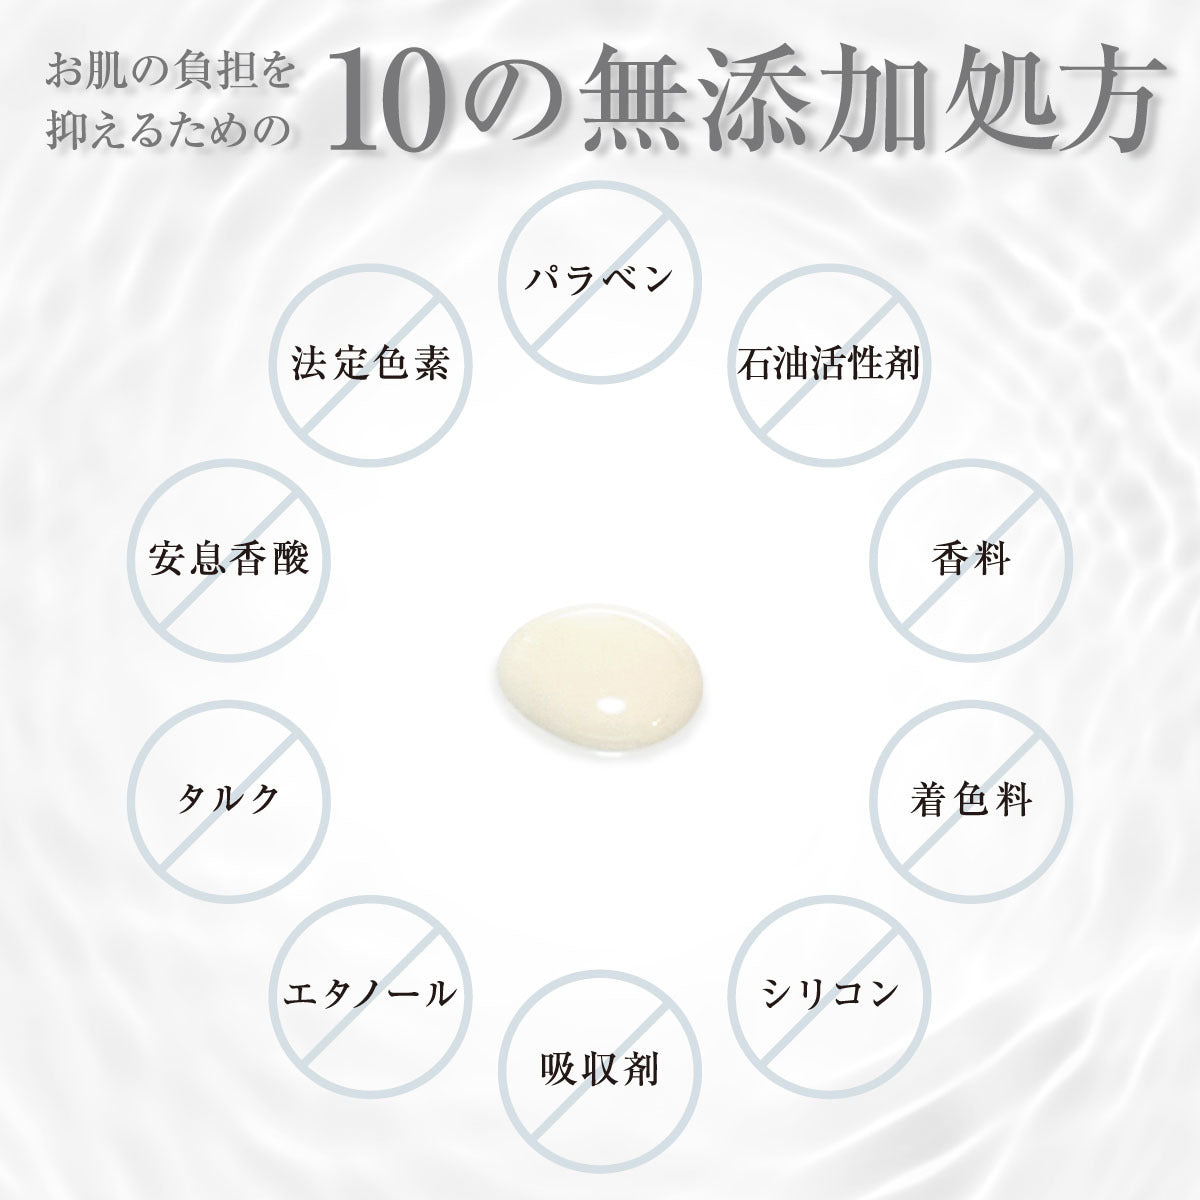 シカクリーム CICA クリーム ツボクサ プラセンタ 敏感肌 日本製 国産 re:es リース